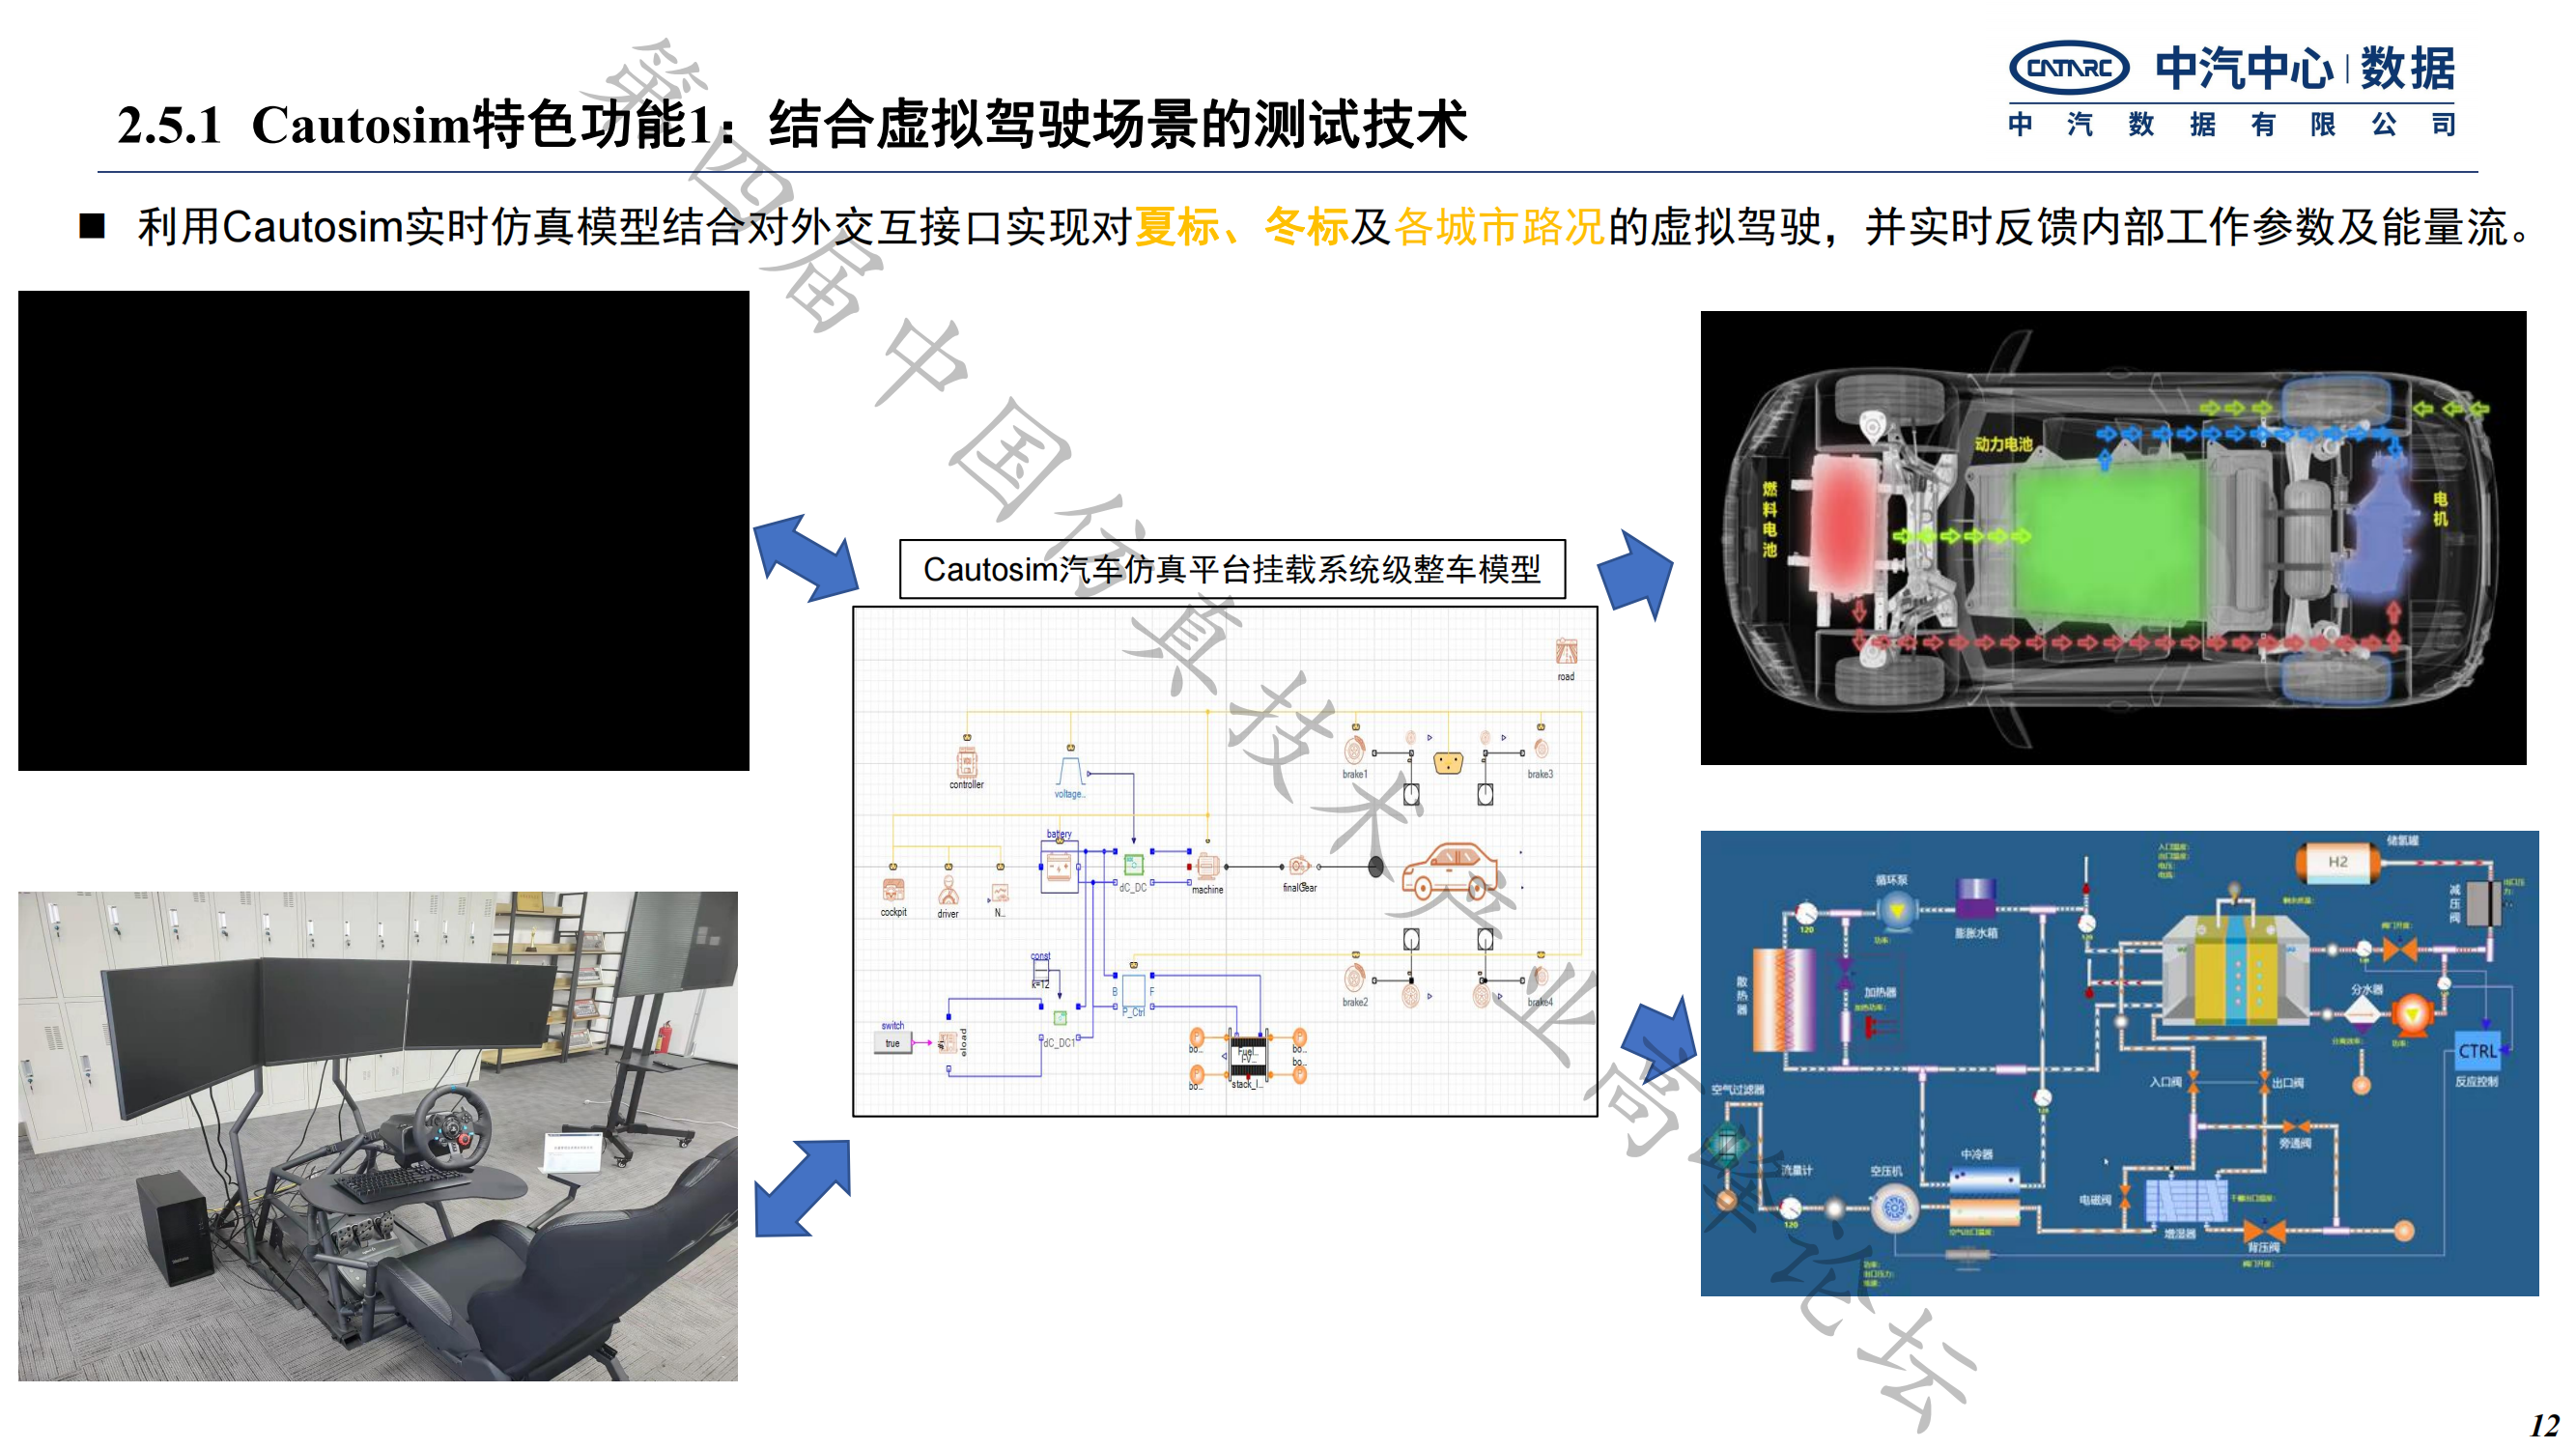 何绍清-国产系统仿真工具在新能源整车研发的应用实践-中汽数据(1)_11.png